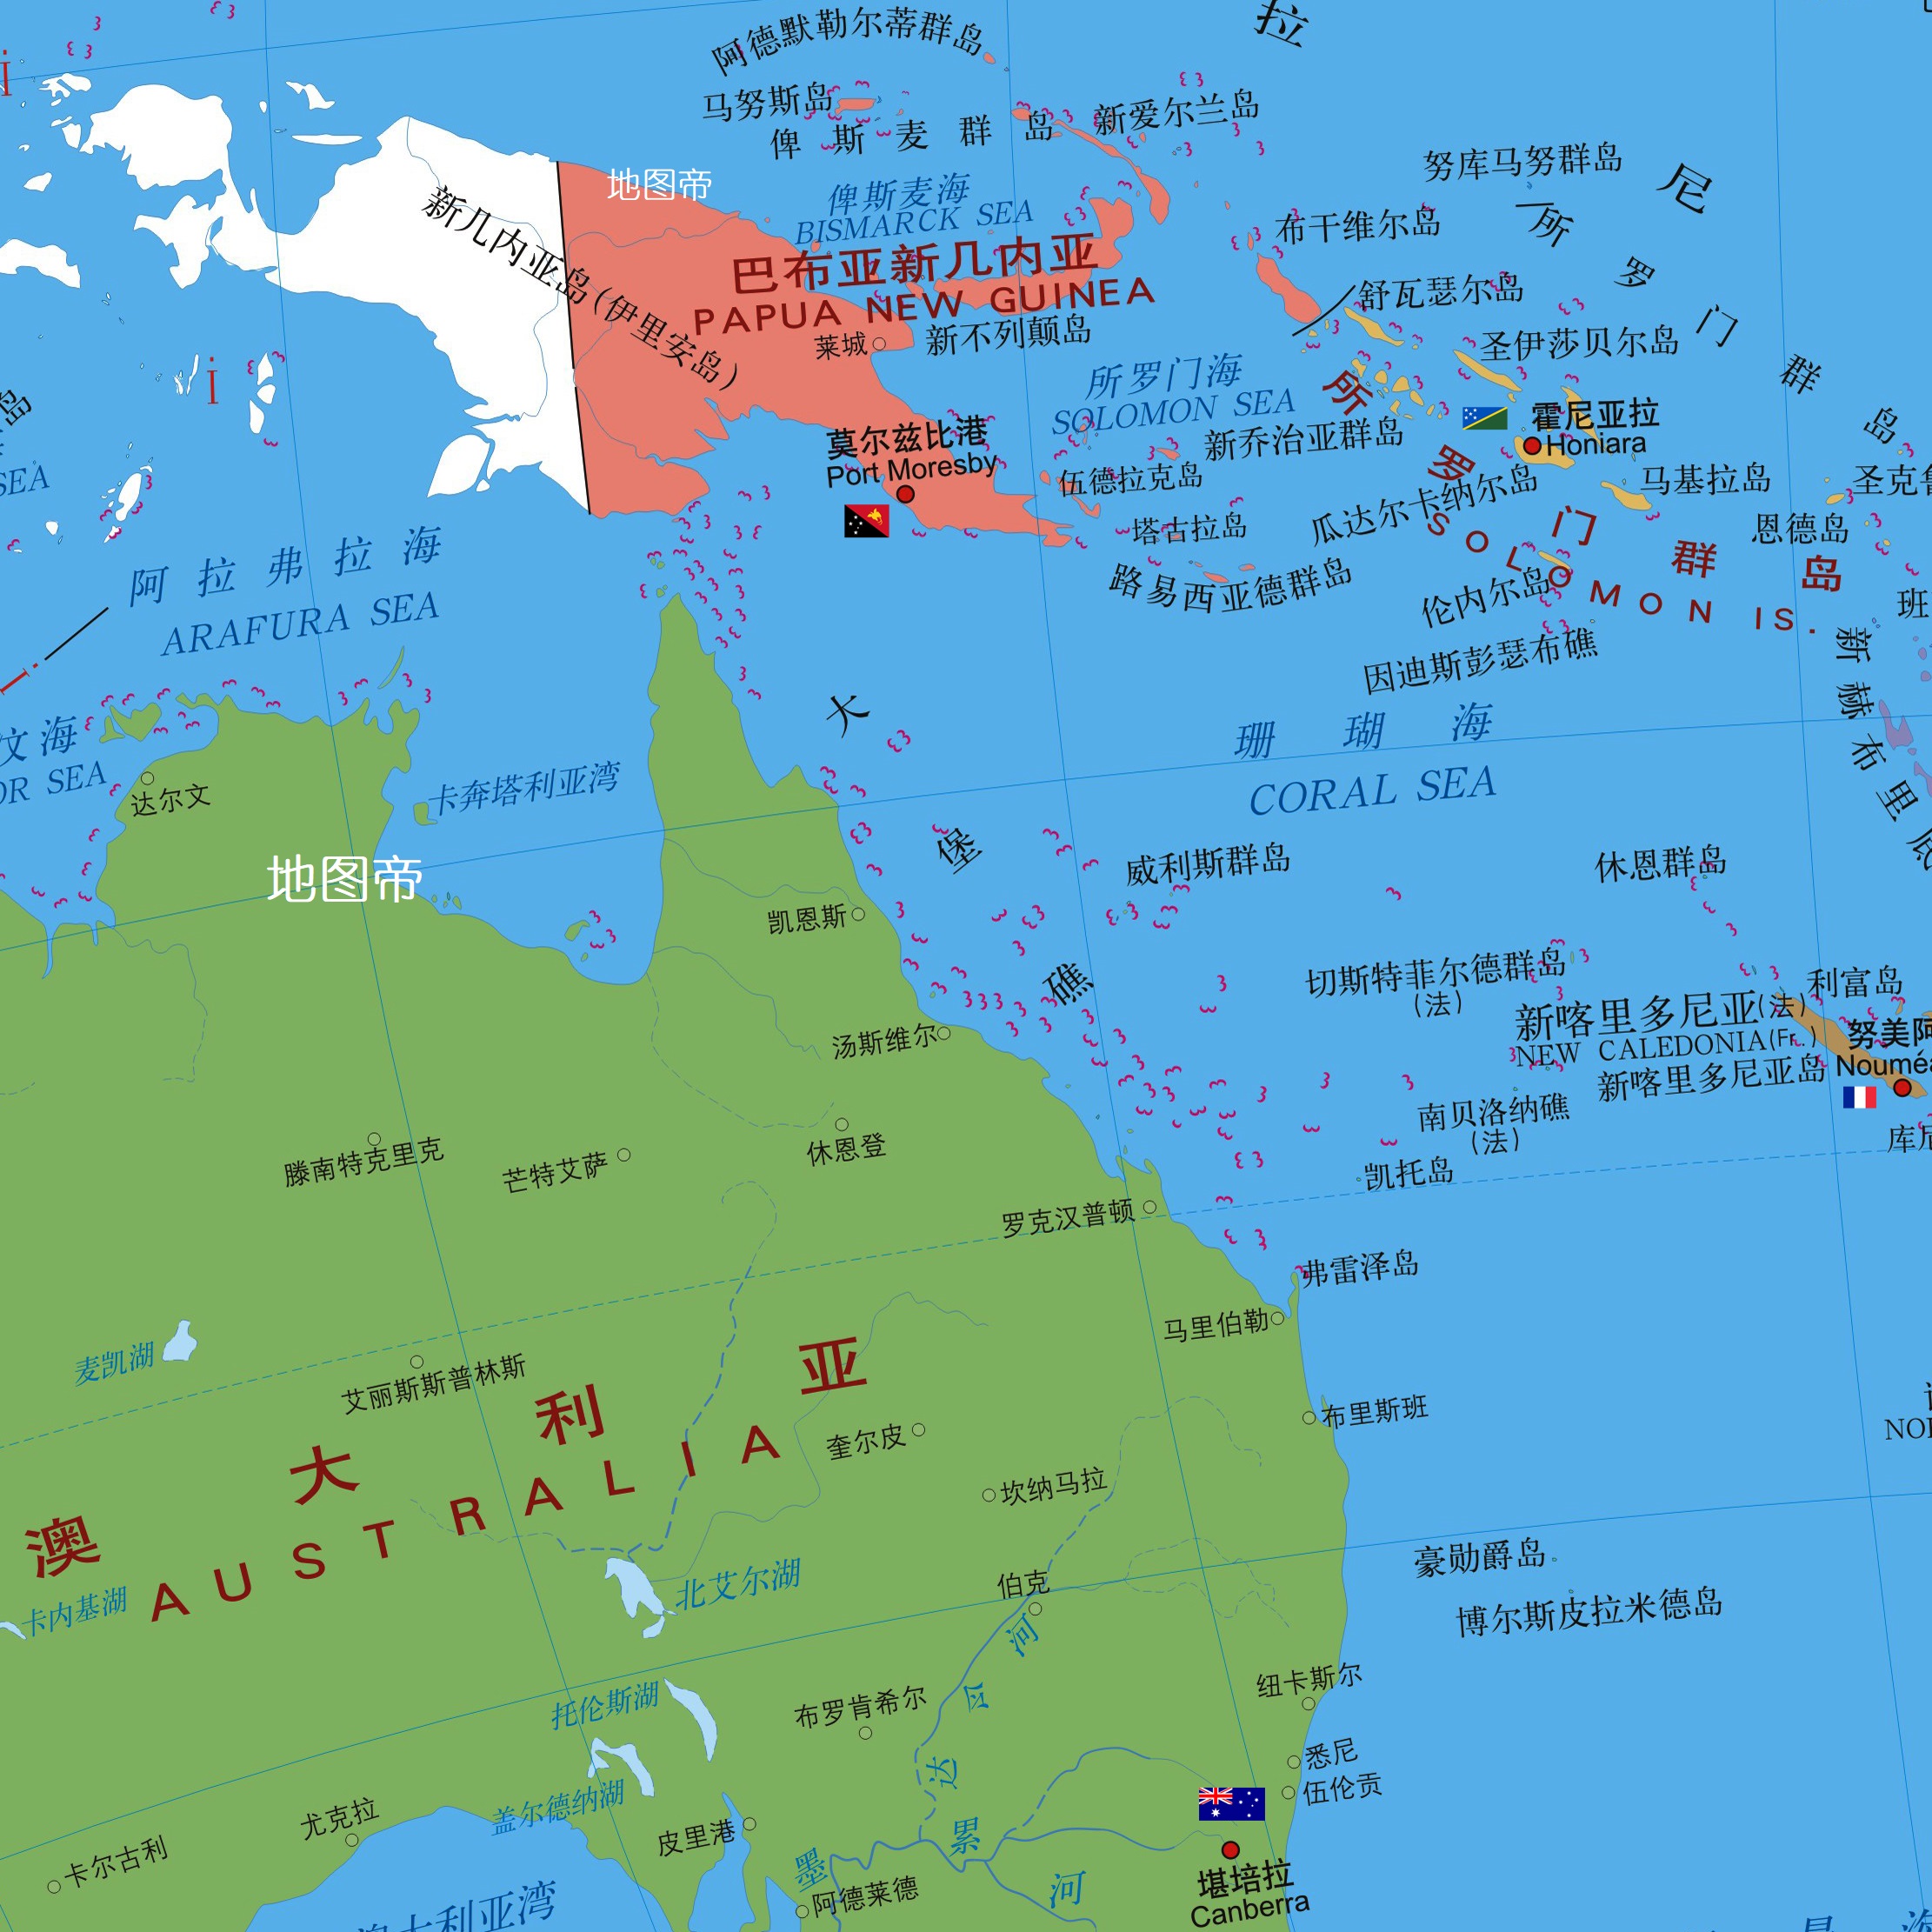 印尼与澳大利亚地图图片